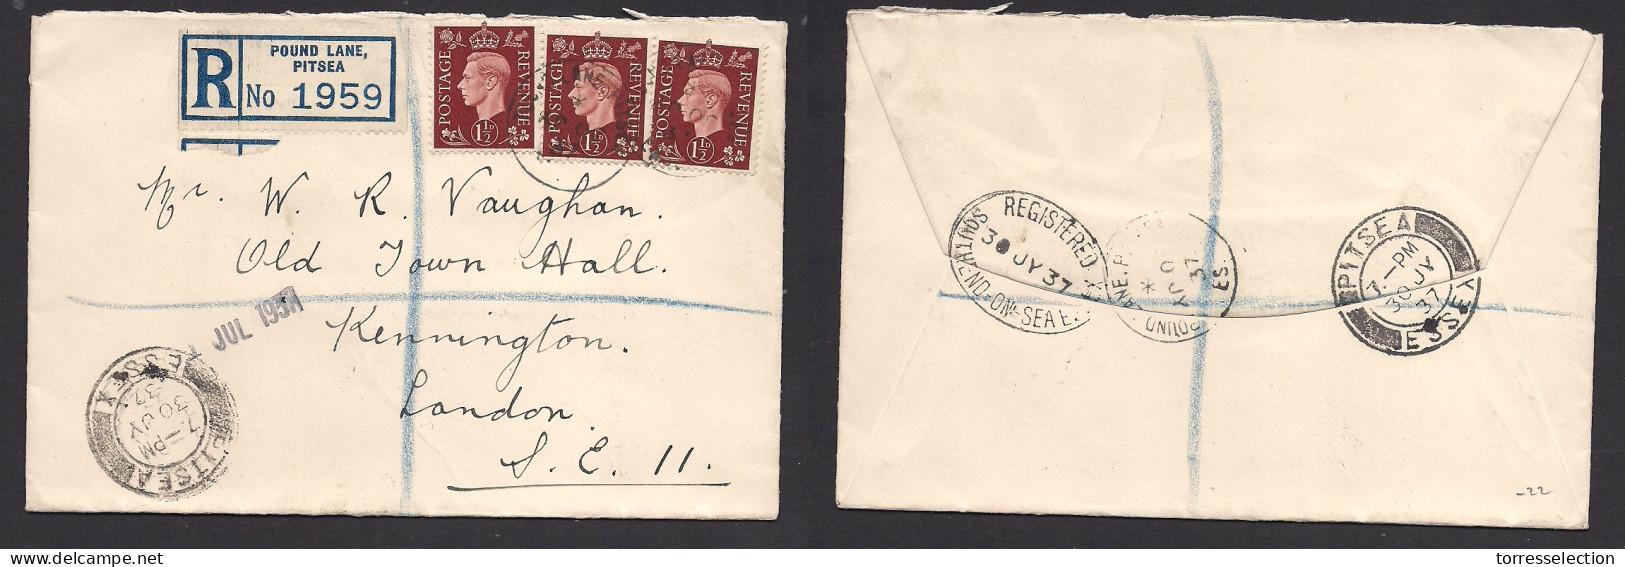 Great Britain - XX. 1937 (30 July) Pound Lane, Pitsea - London. Multifkd Registered Envelope 1 182d (x3) XSALE. - ...-1840 Préphilatélie